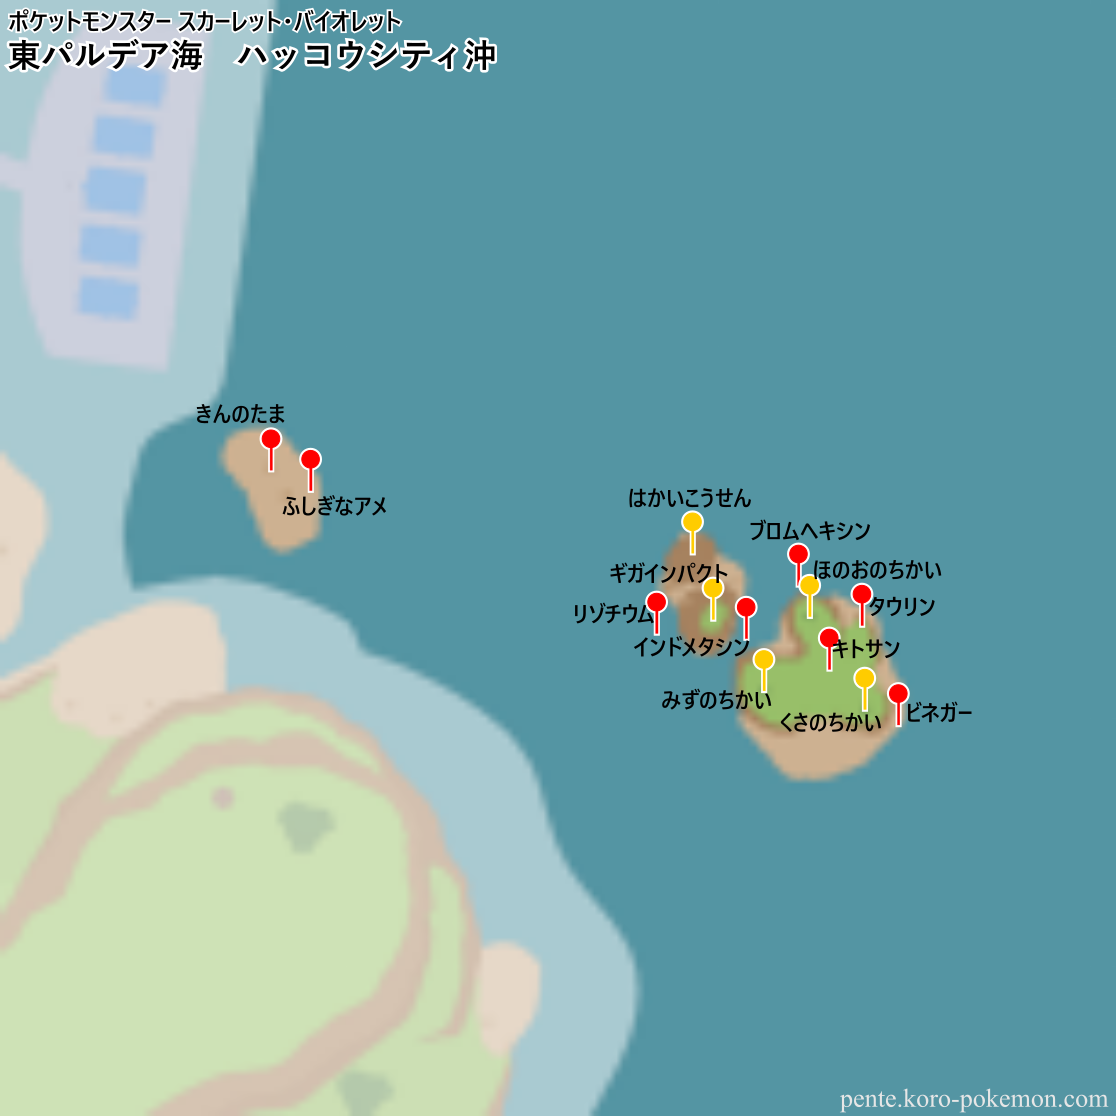 ポケモンスカーレット・バイオレット 東パルデア海 ハッコウシティ沖 マップ (落ちているアイテム)